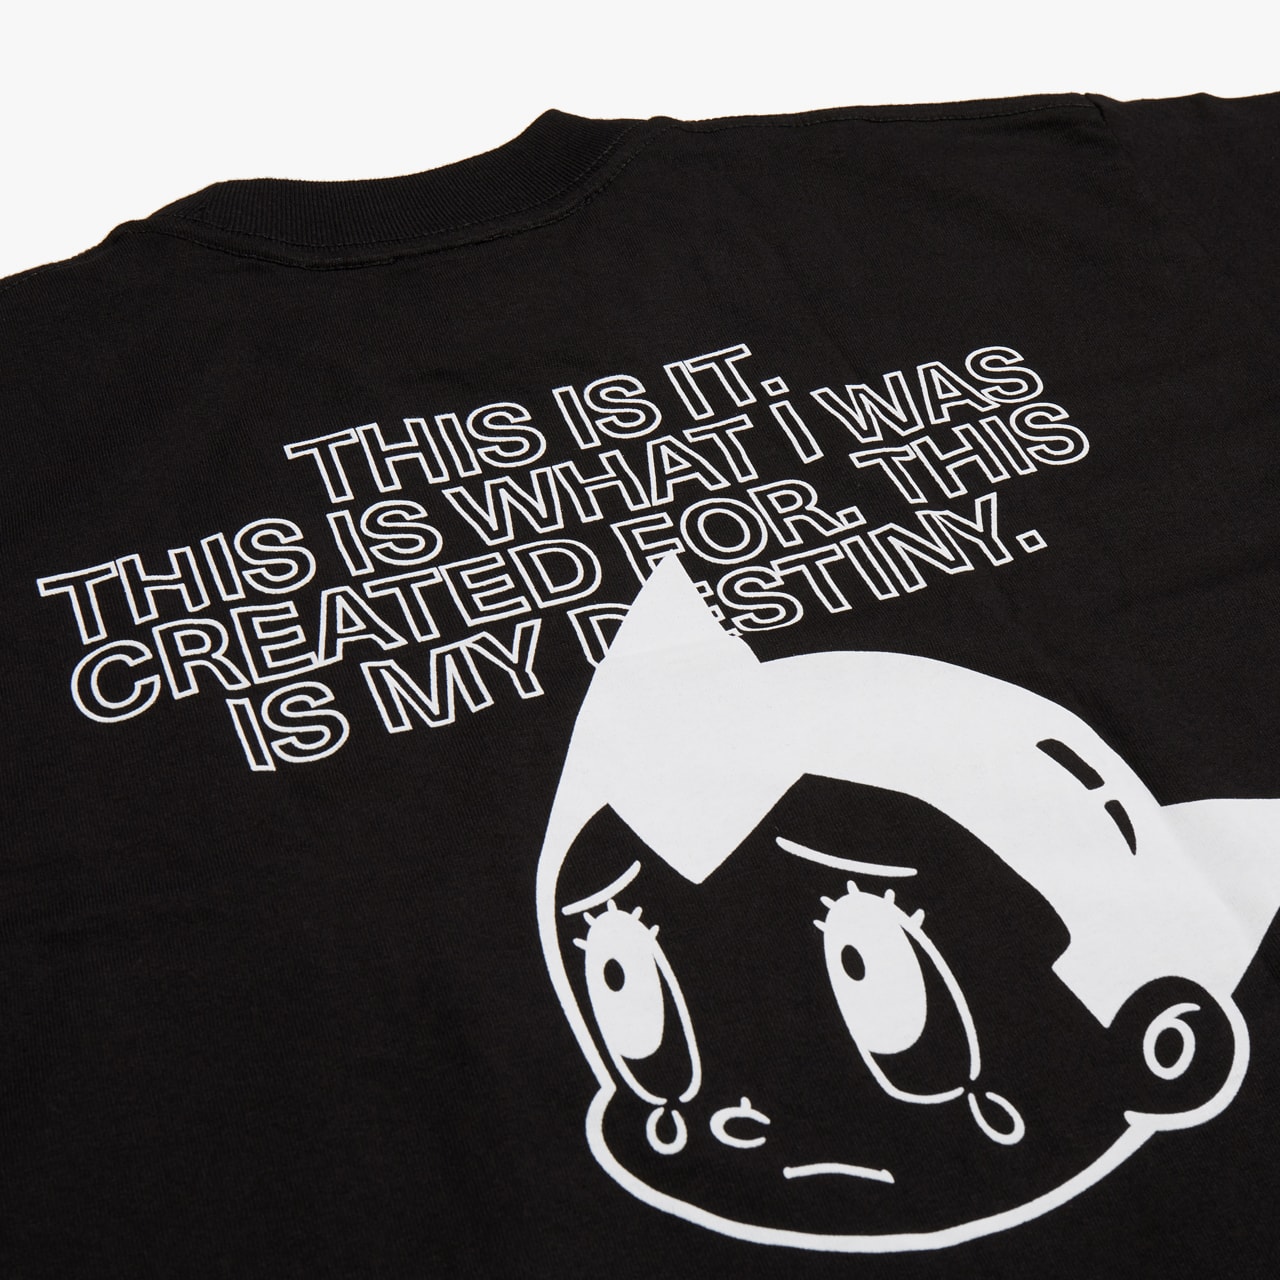 音楽レーベル Ghostly International が『鉄腕アトム』とのコラボマーチャンダイズを発表 'Astro Boy' x Ghostly International Collaboration osamu tezuka collection eric hu nike sportswear ssense tee shirt tote bag release date buy